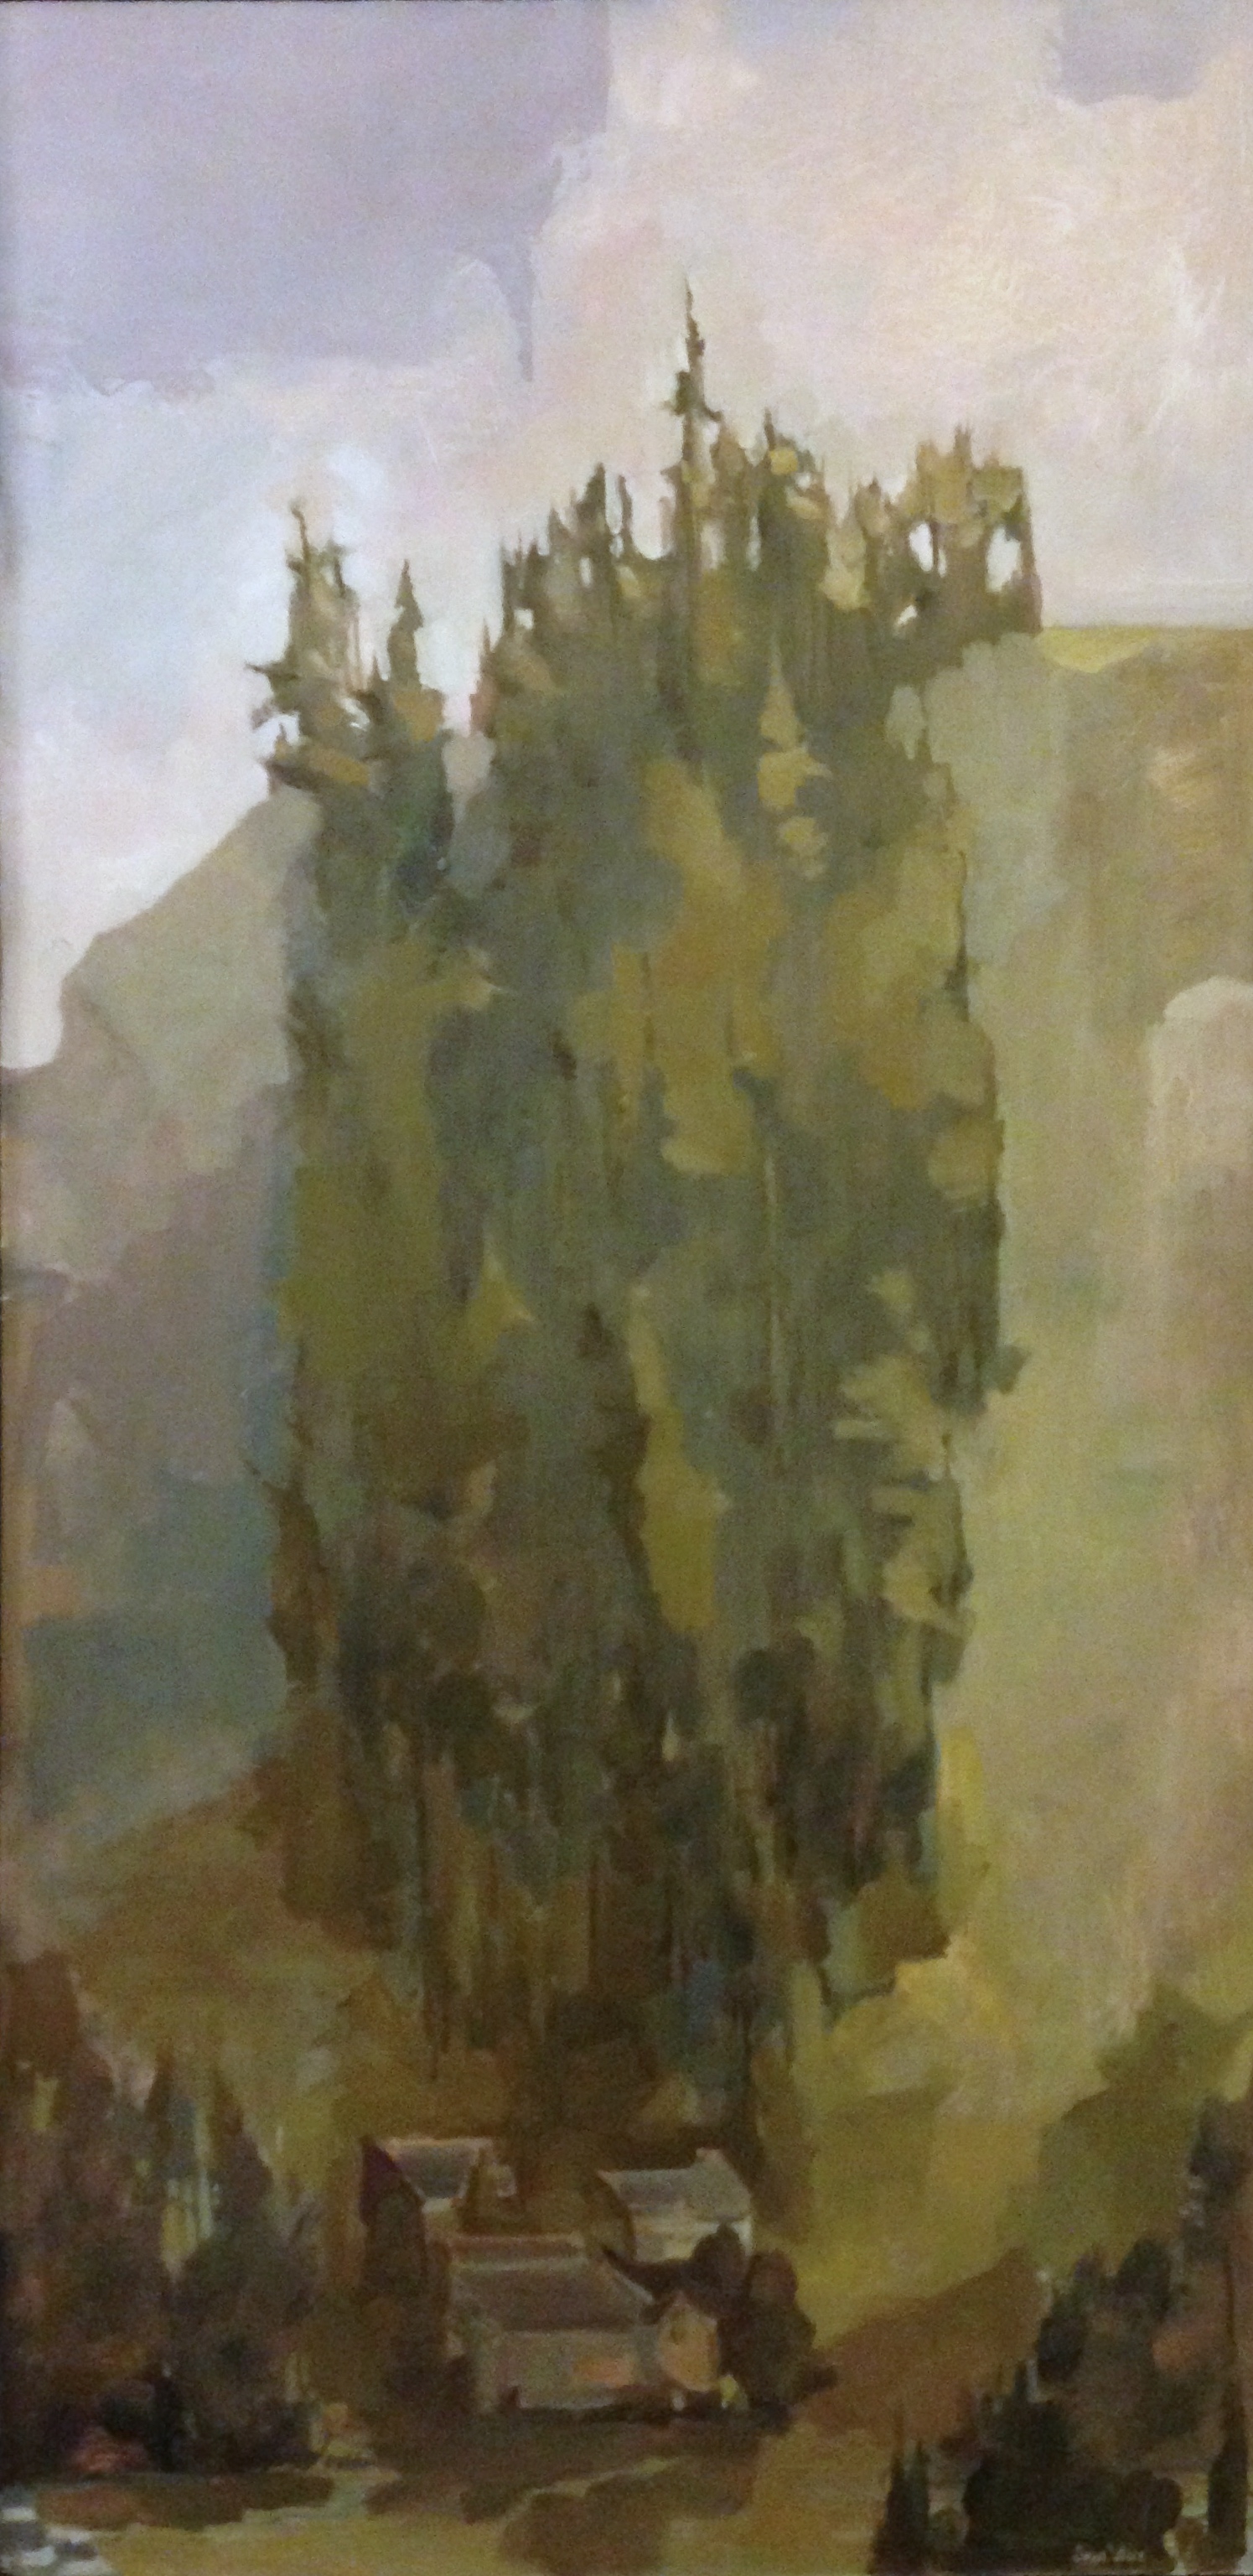 Copse, oil on panel, 24"x48", 2015